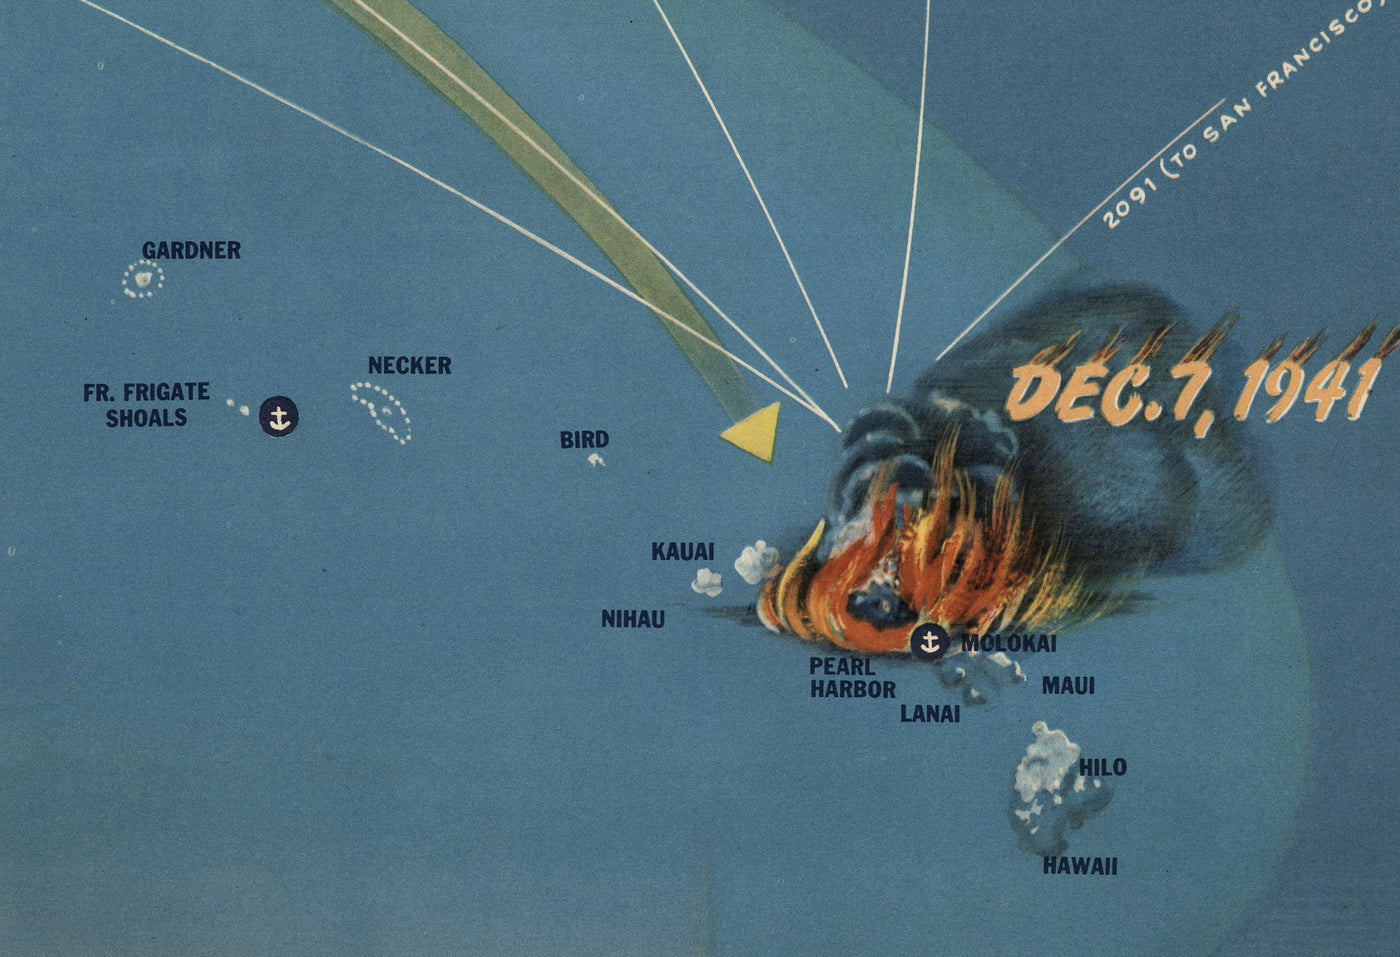 NavWarMap No. 4 - Old World War 2 Map, 1944 - Pacific Battles, Pearl Harbour, US vs. Japan - US Navy Educational & Propaganda Map